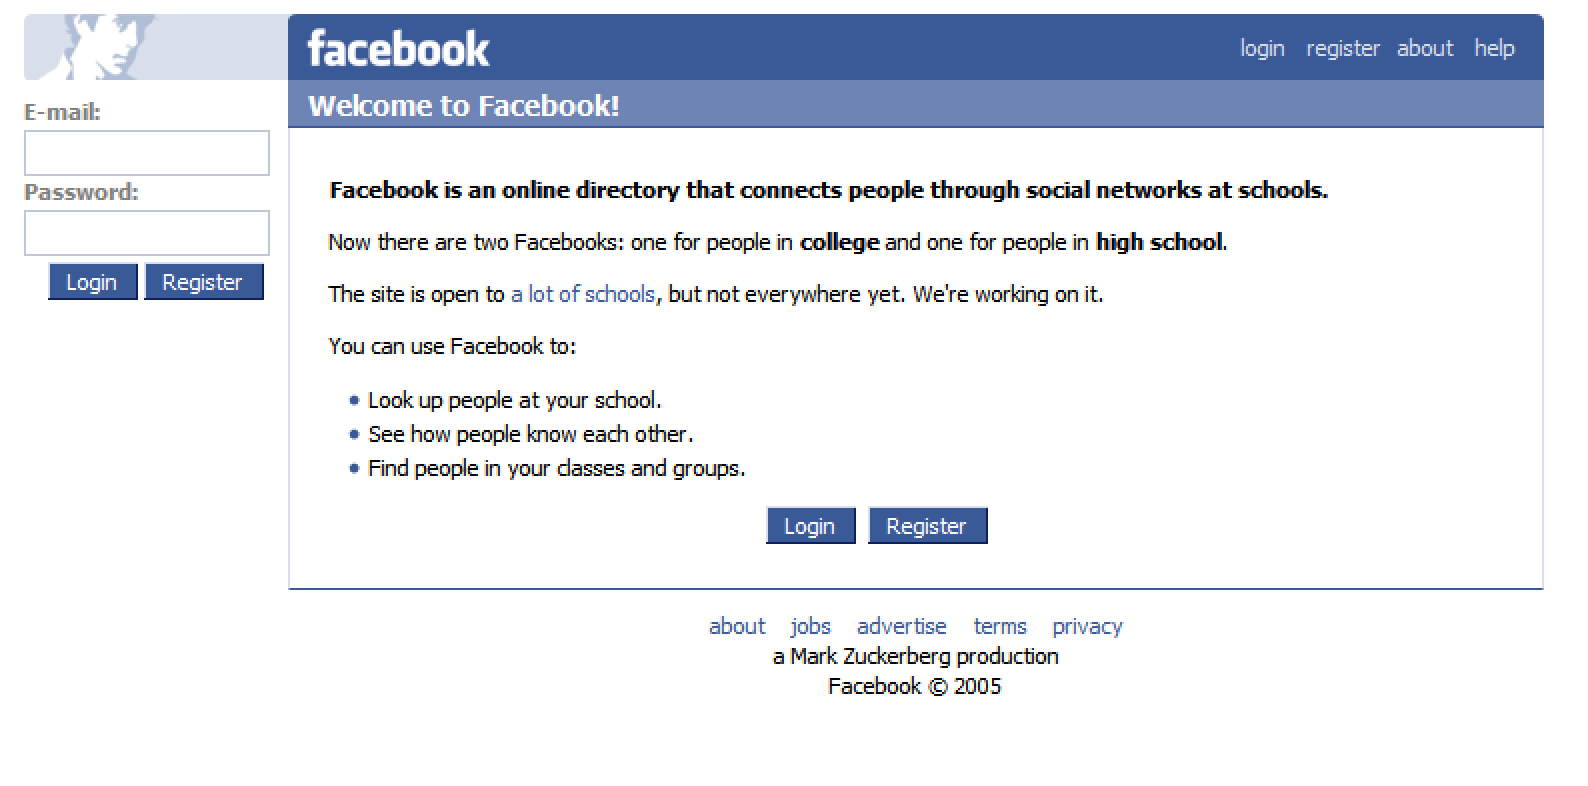 Facebook 2005. Das Metaversum – sollten wir es fürchten?